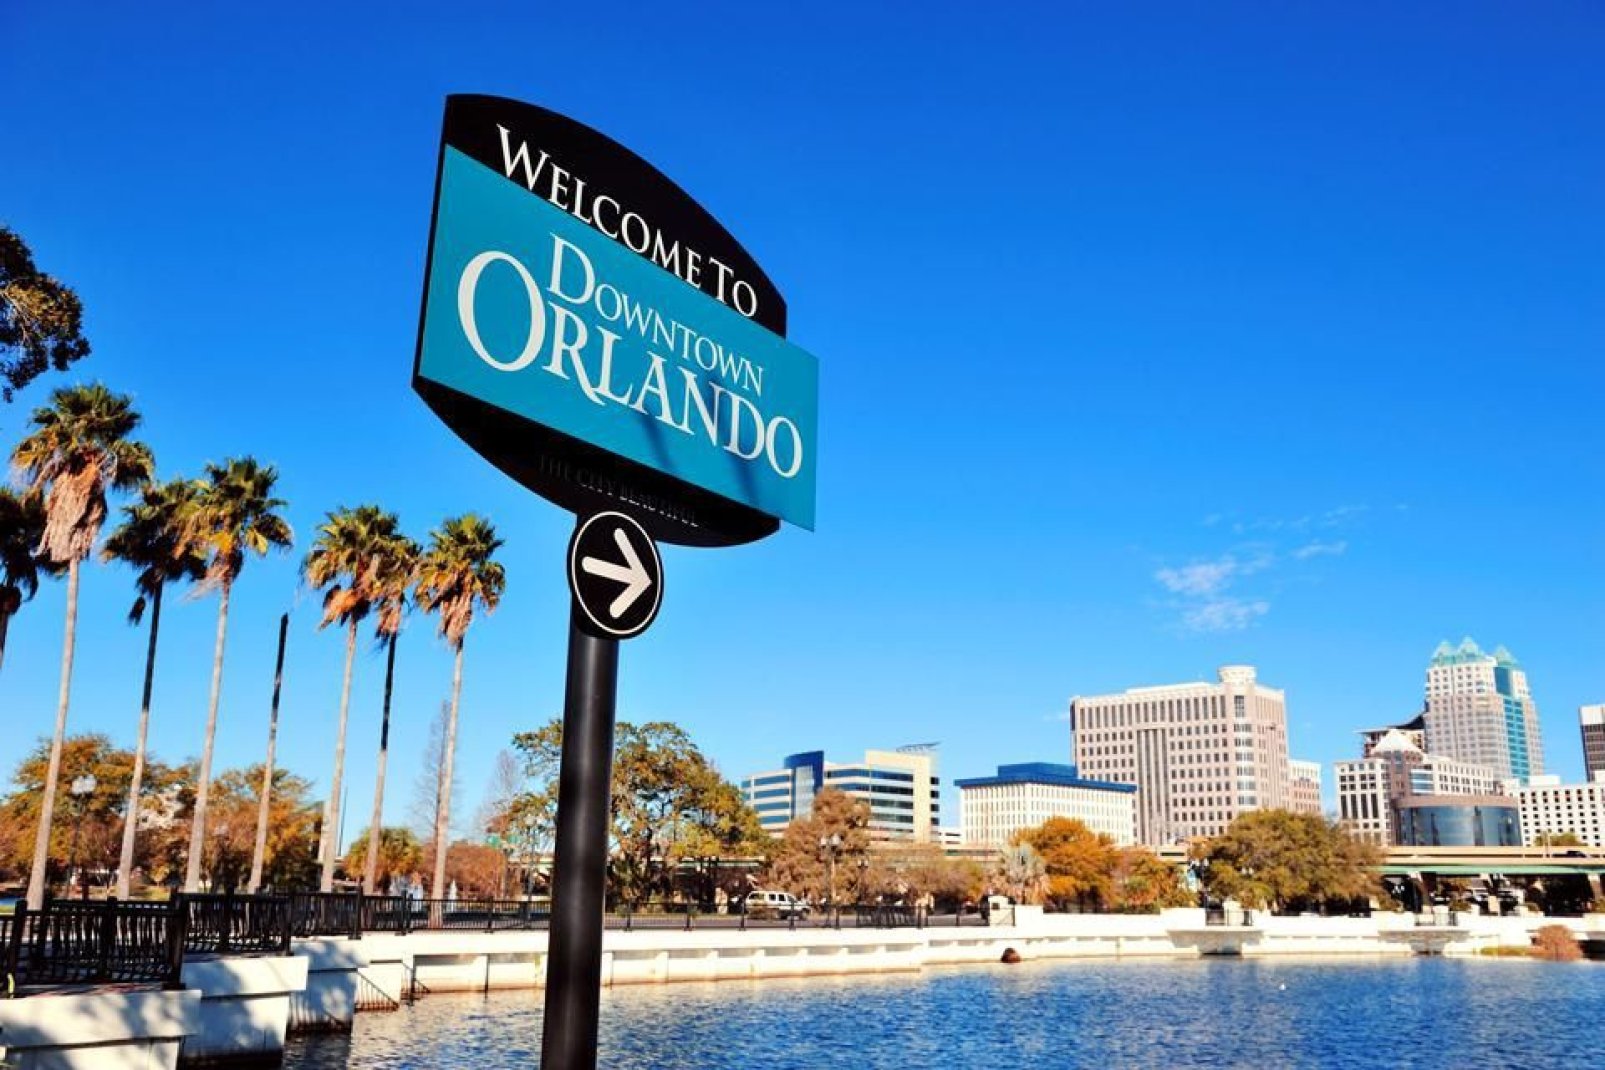 Le centre ville d'Orlando est l'un des plus grands centres villes de Floride centrale. C'est un quartier important pour les affaires et un lieu emprunt de dynamisme culturel.